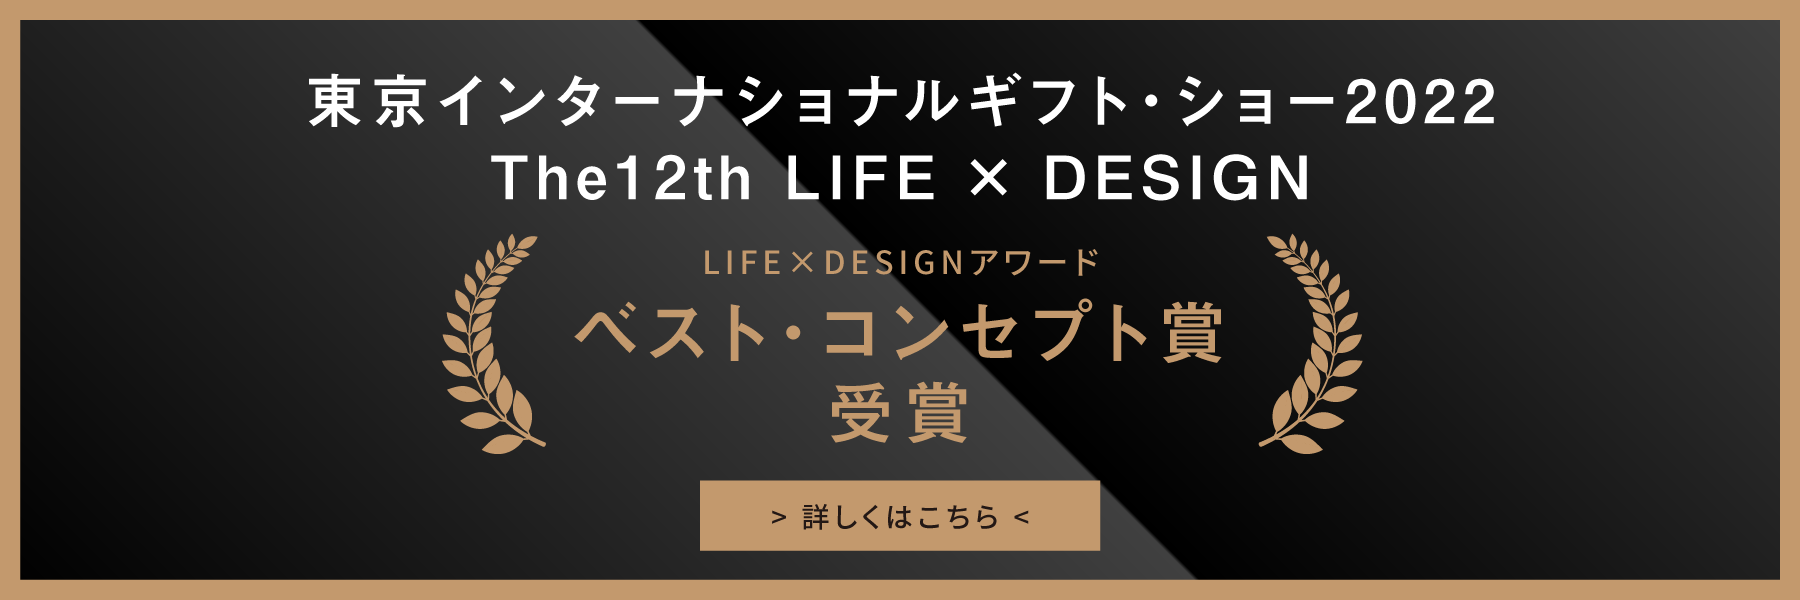 東京インターナショナルギフト・ショー2022|The12th LIFE × DESIGN|LIFE×DESIGNアワード|ベスト・コンセプト賞受賞|詳しくはこちら